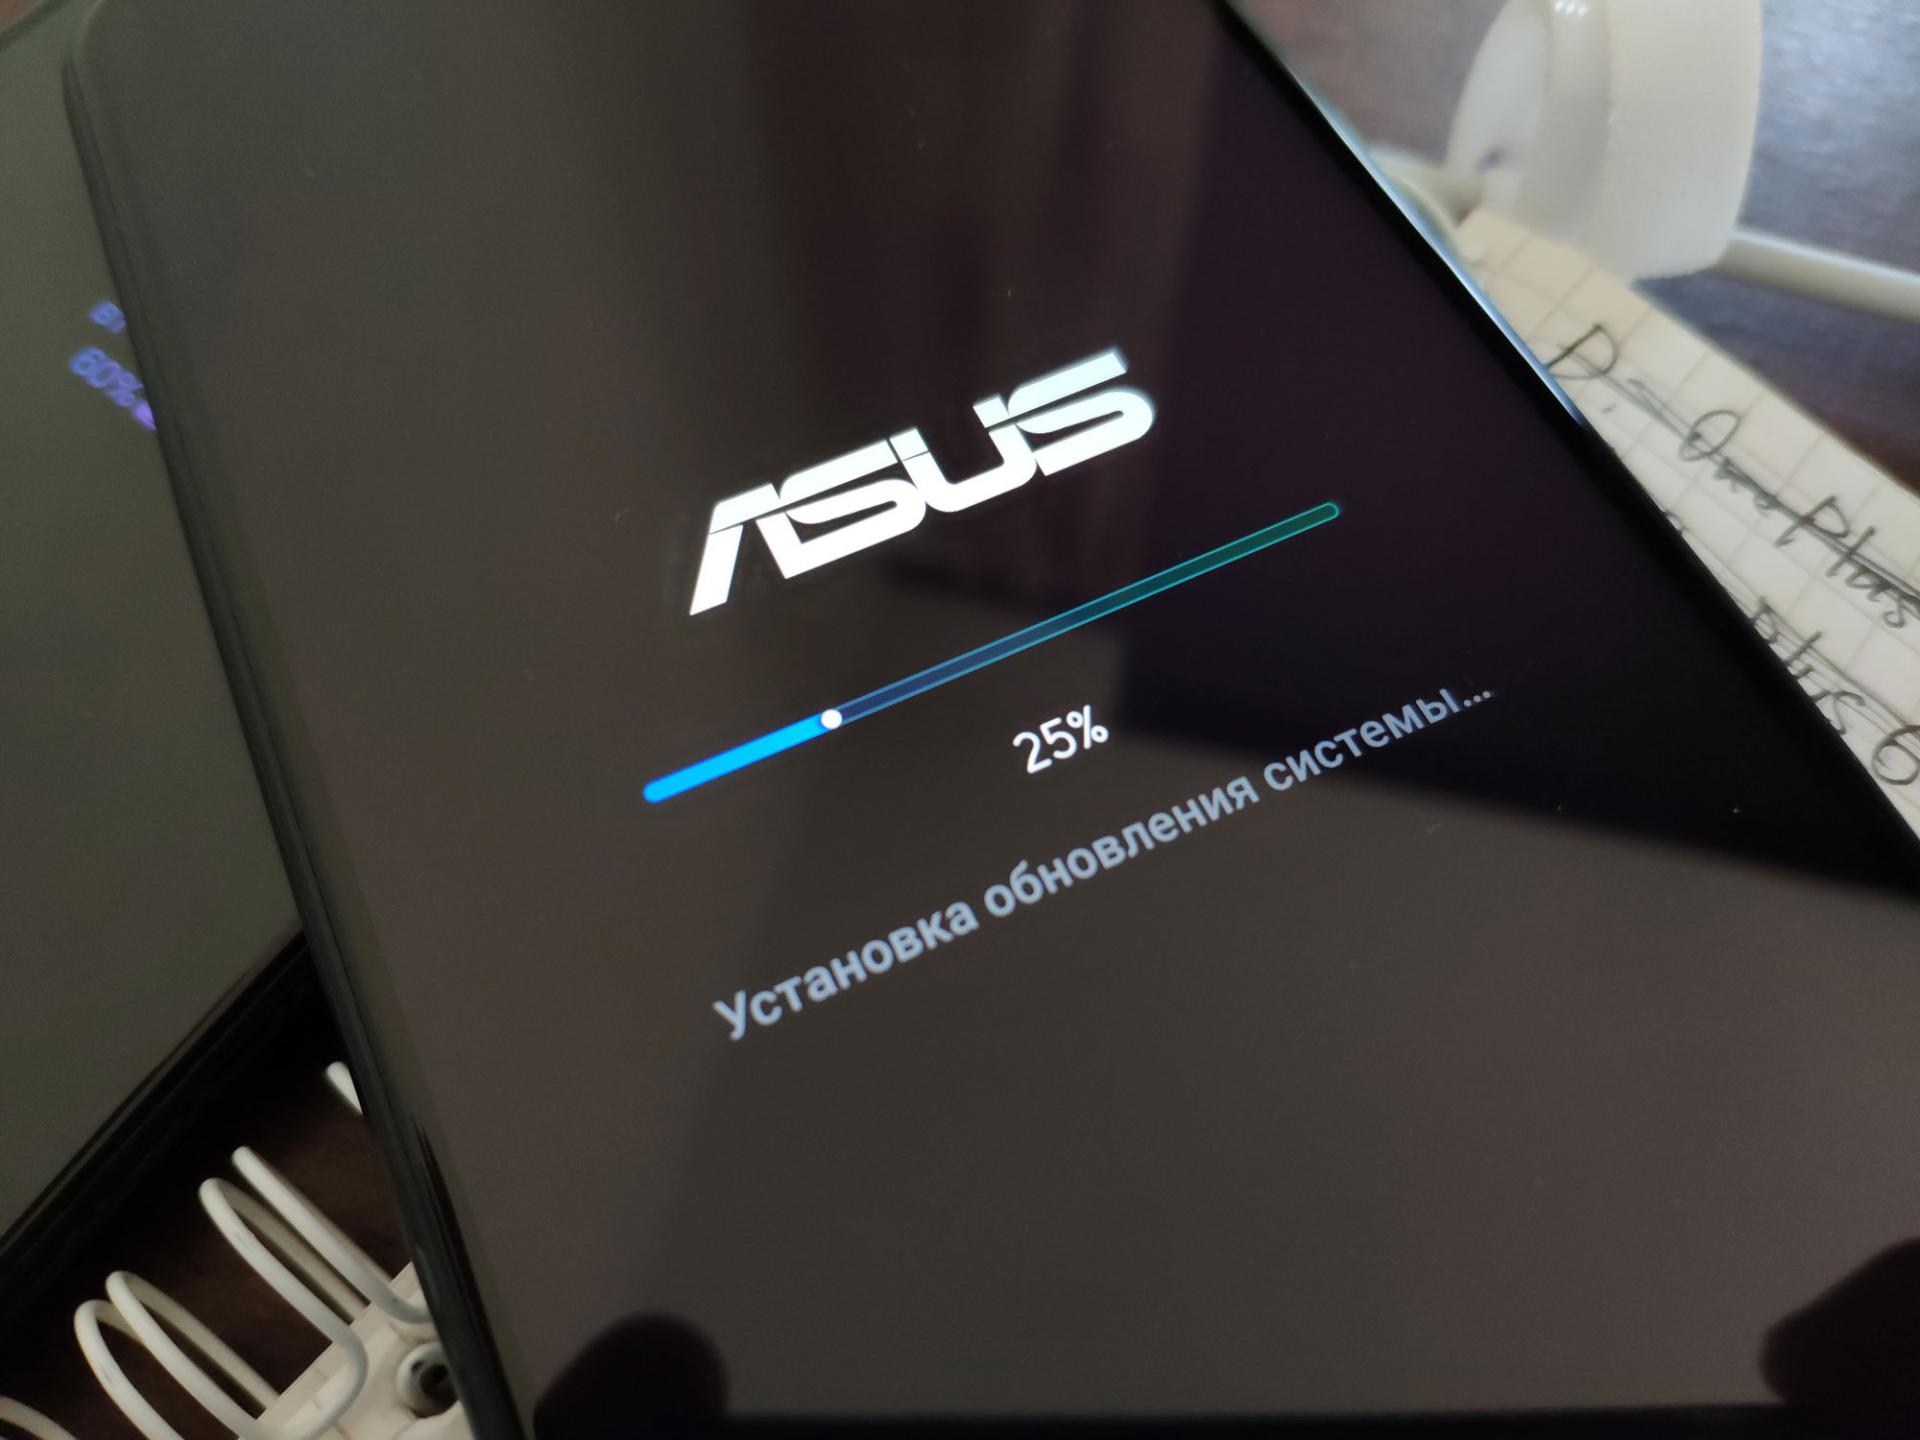 Популярный смартфон Asus Zenfone Max Pro M1 обновляется до Android 10. Бета-версия